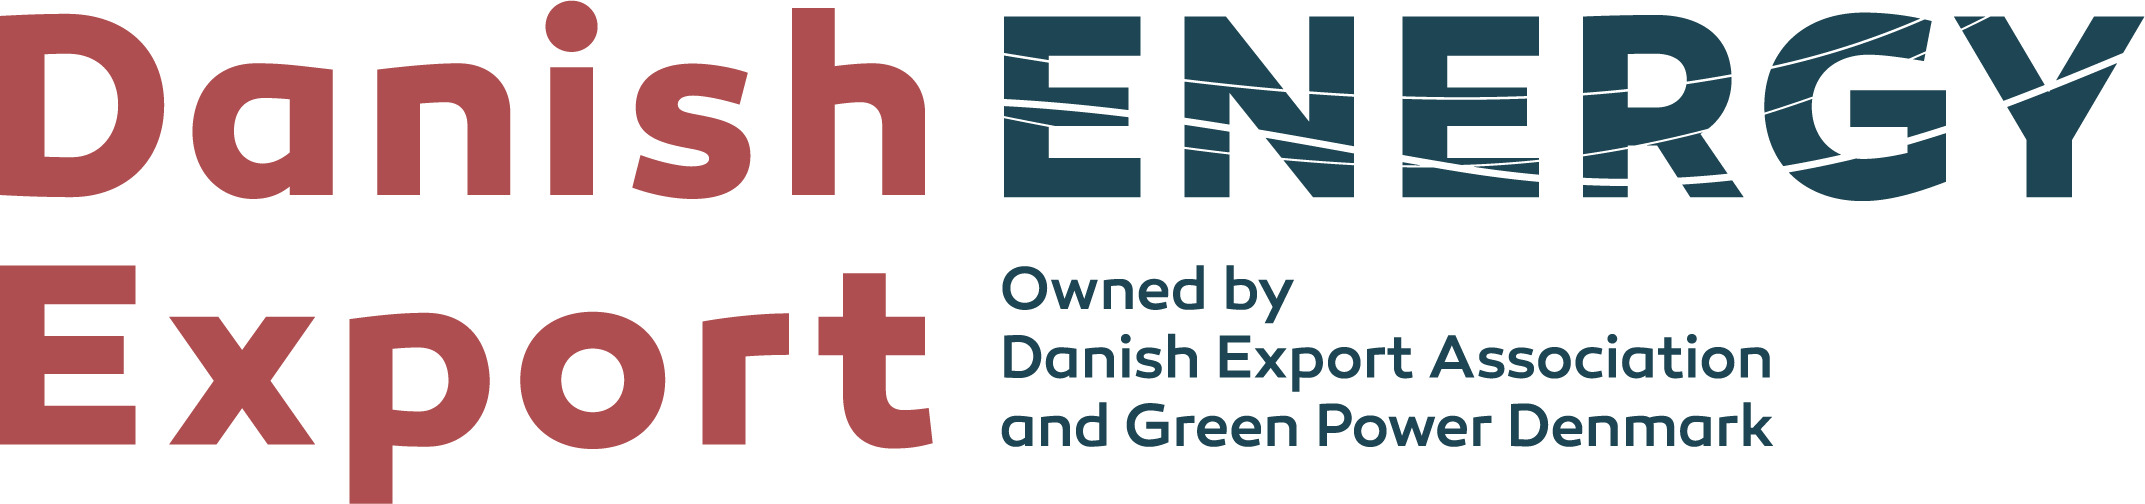 Danish Energy Export